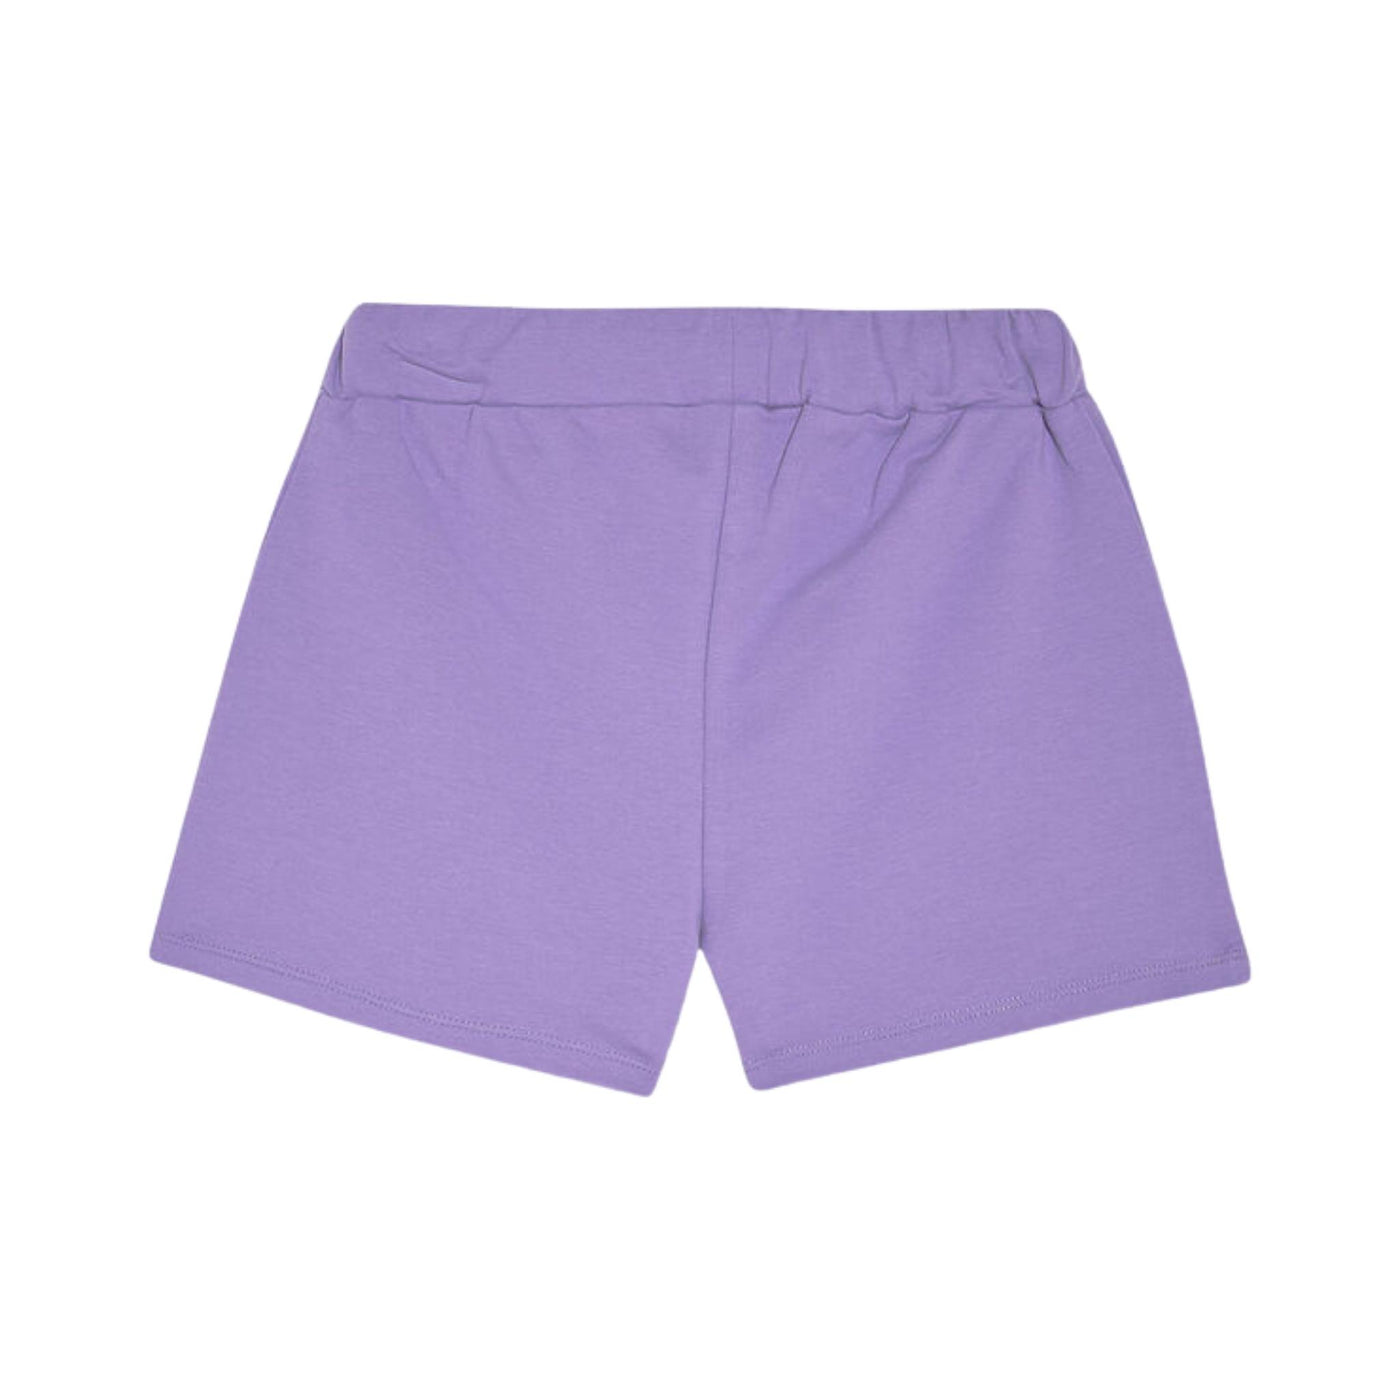 shorts bambina liu jo in cotone stretch lilla retro